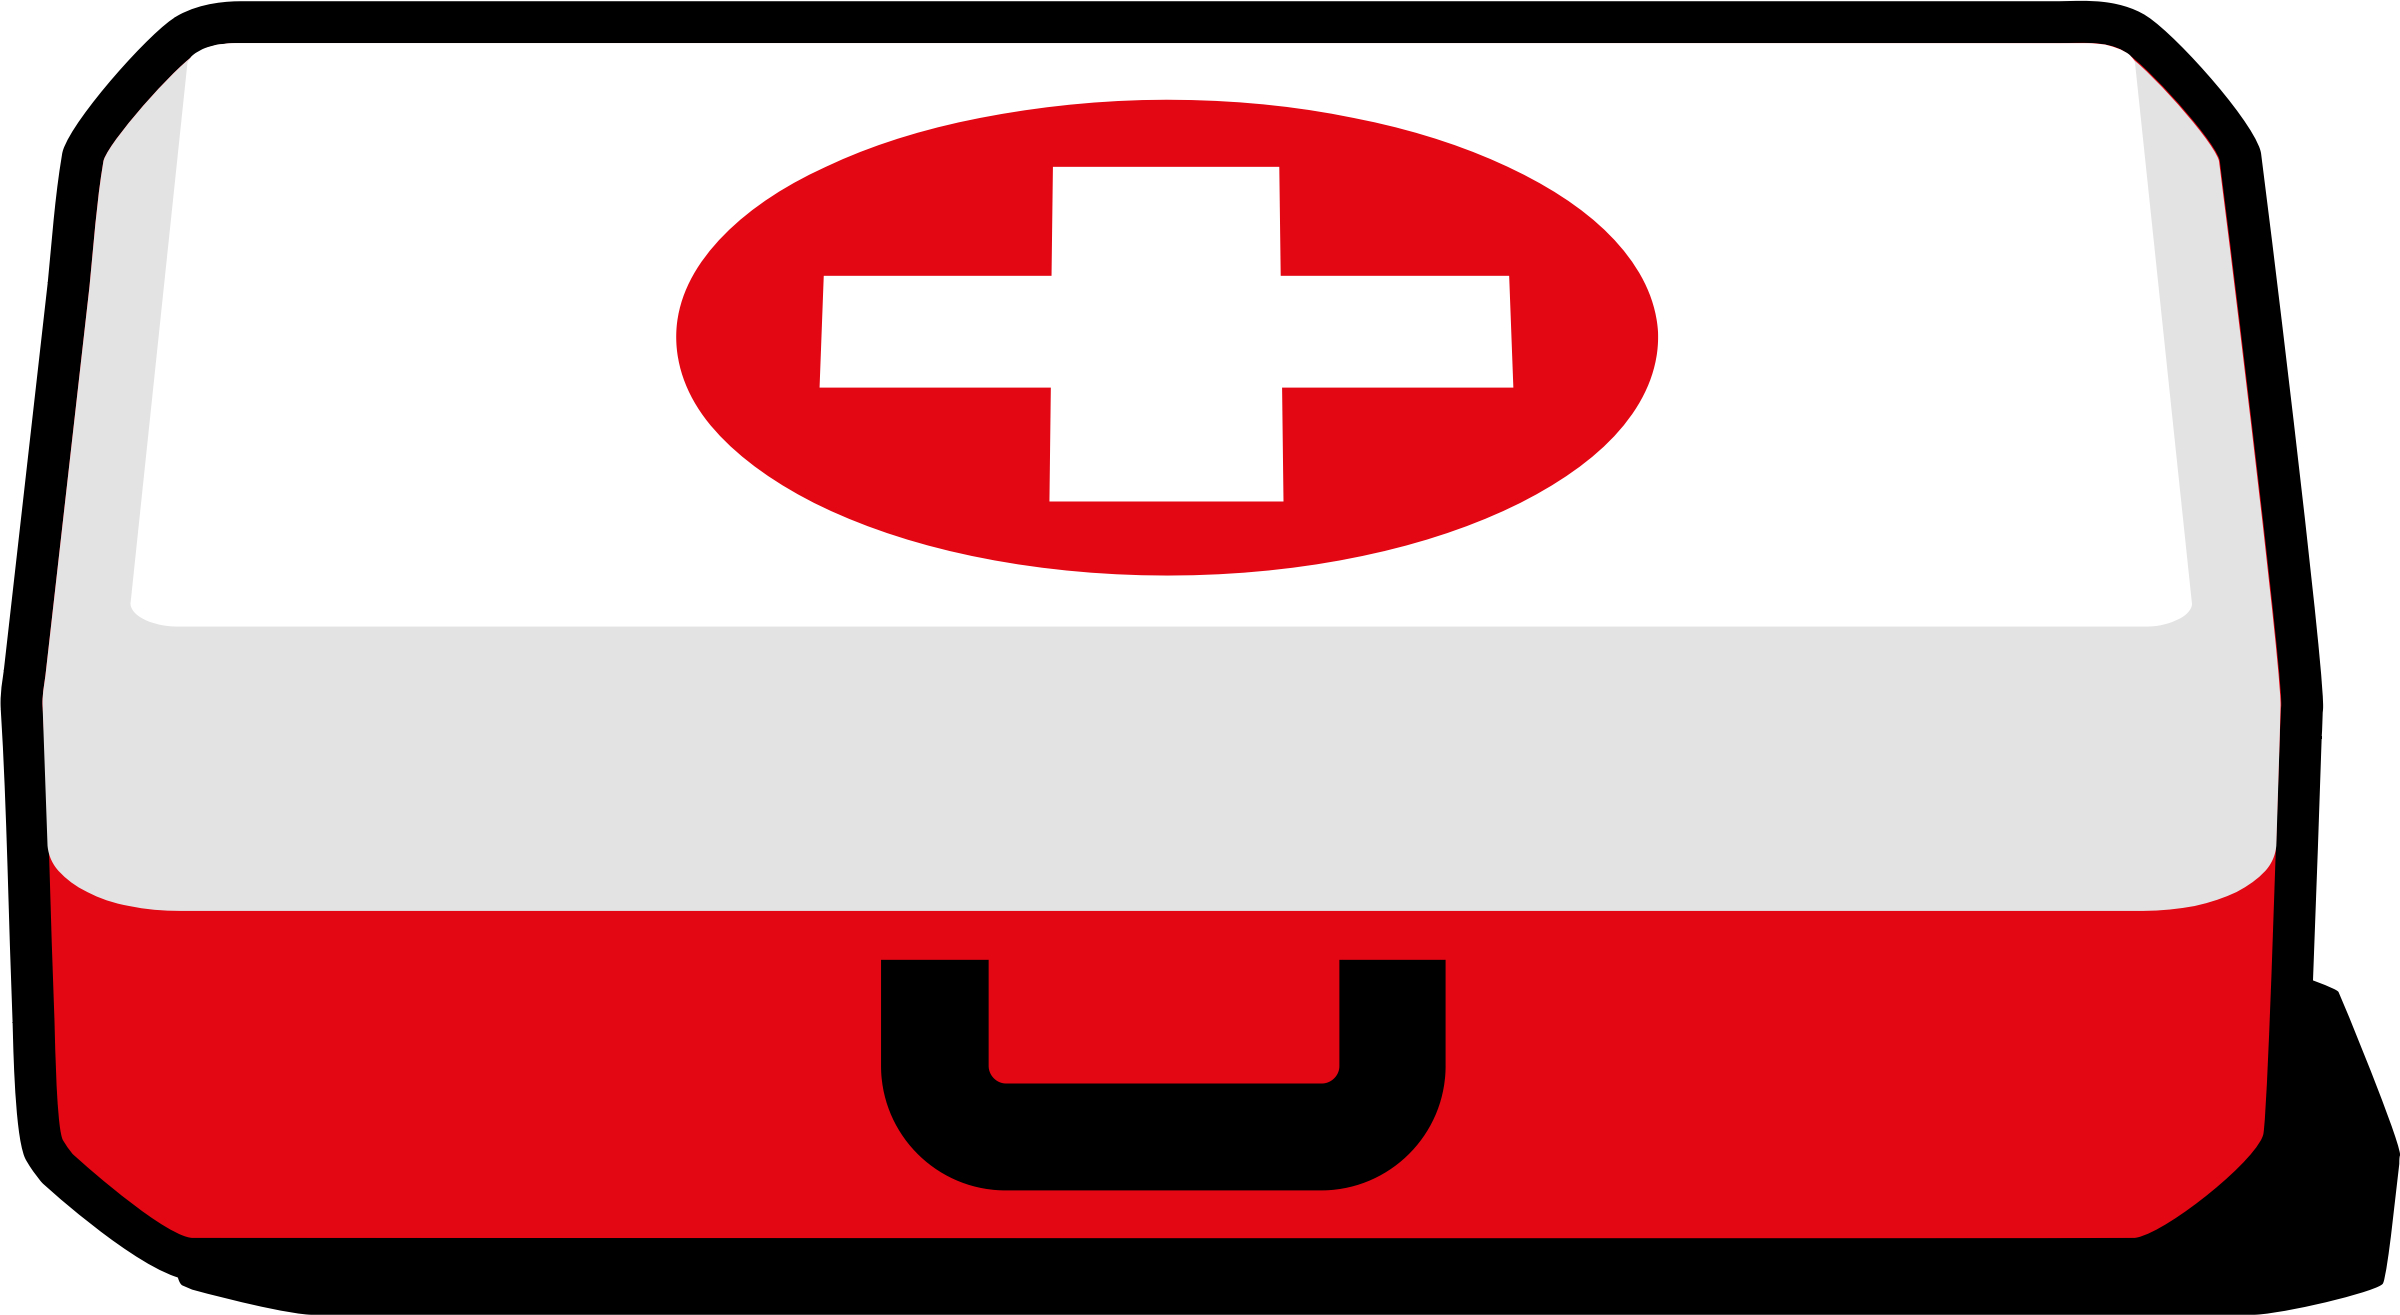 Be Prepared First Aid First Aid Supplies First Aid - Clip Art First Aid Kit (2400x1315)